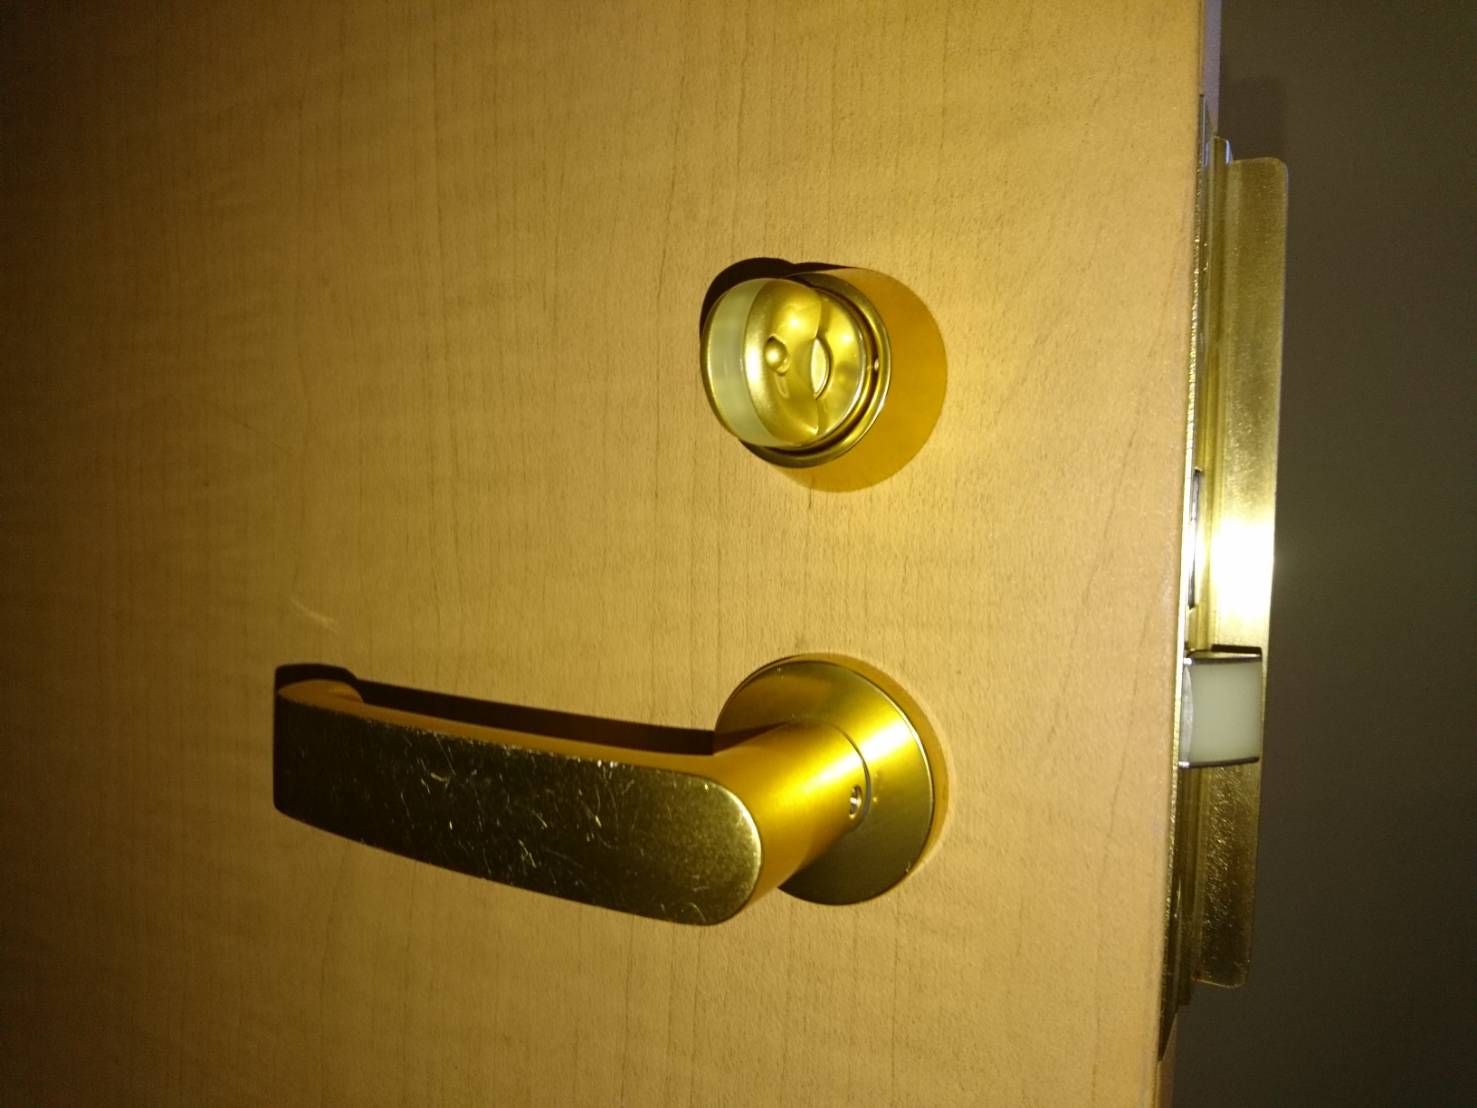 鍵穴にイタズラ 鍵が回らない玄関の鍵開け 玄関や車 バイクの鍵トラブルによる鍵開けや紛失鍵作成が格安な鍵屋